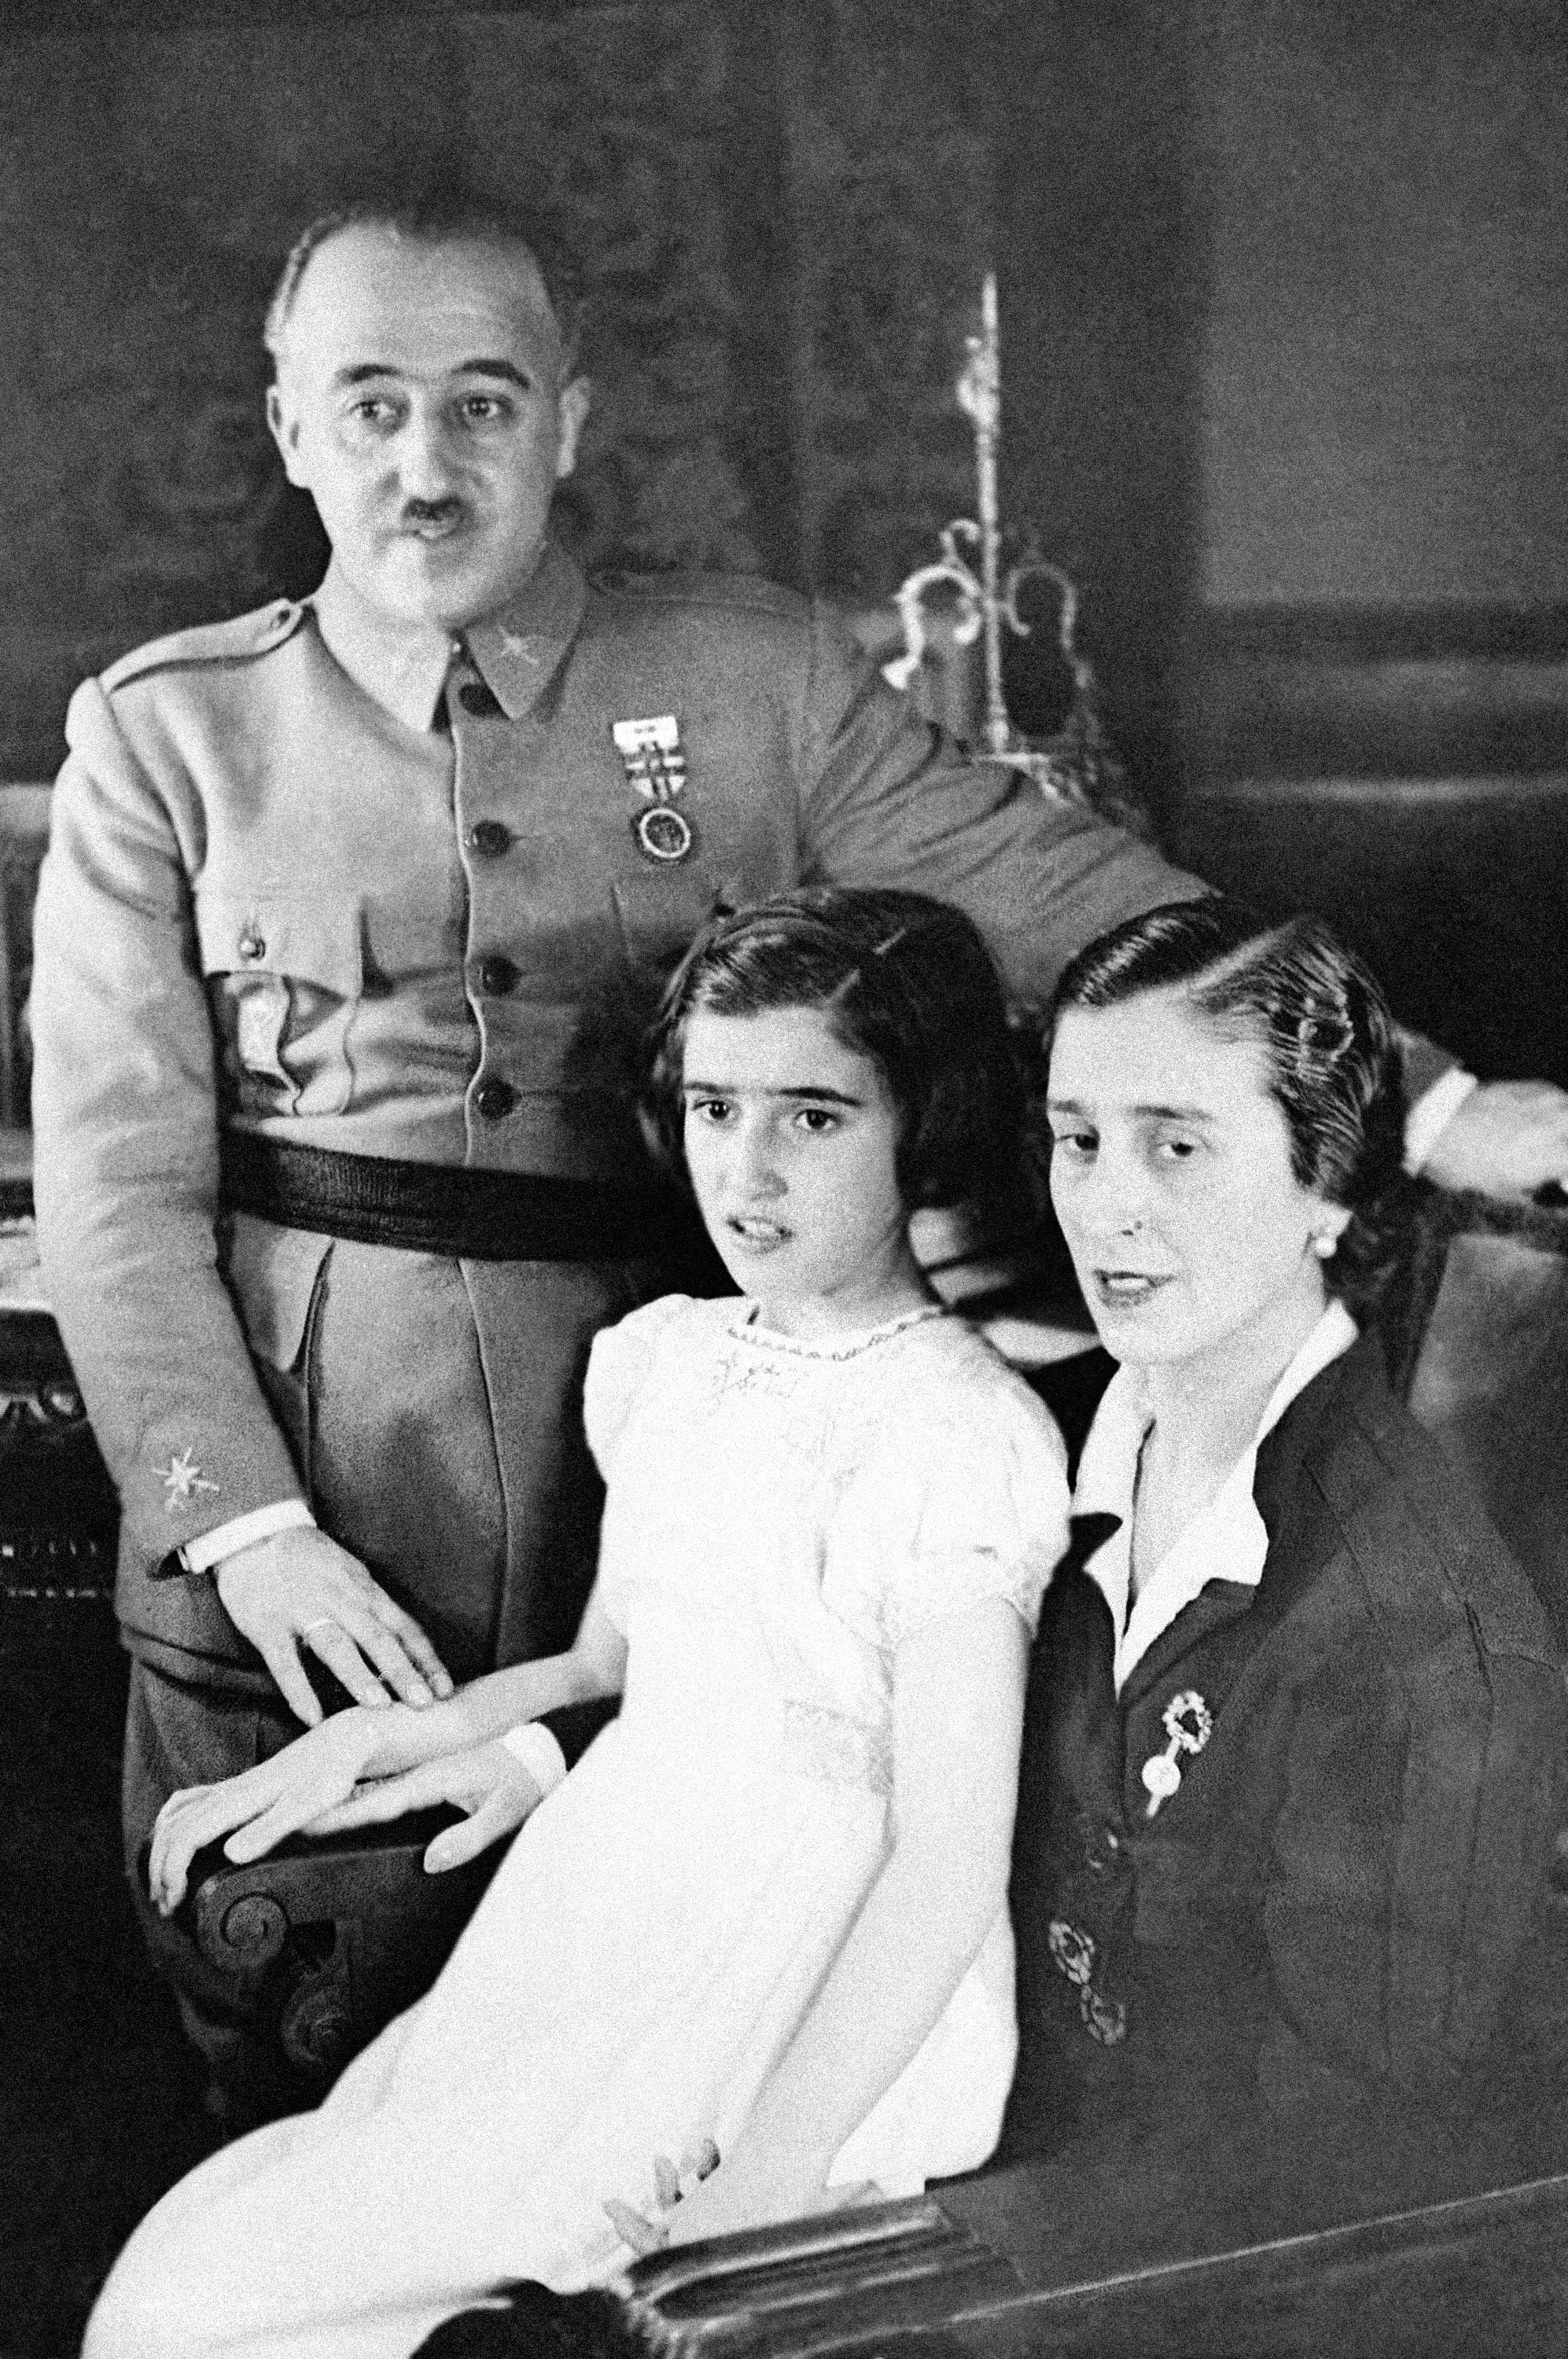 La familia Franco, convencida de que no se exhumará el dictador sin su aprobación